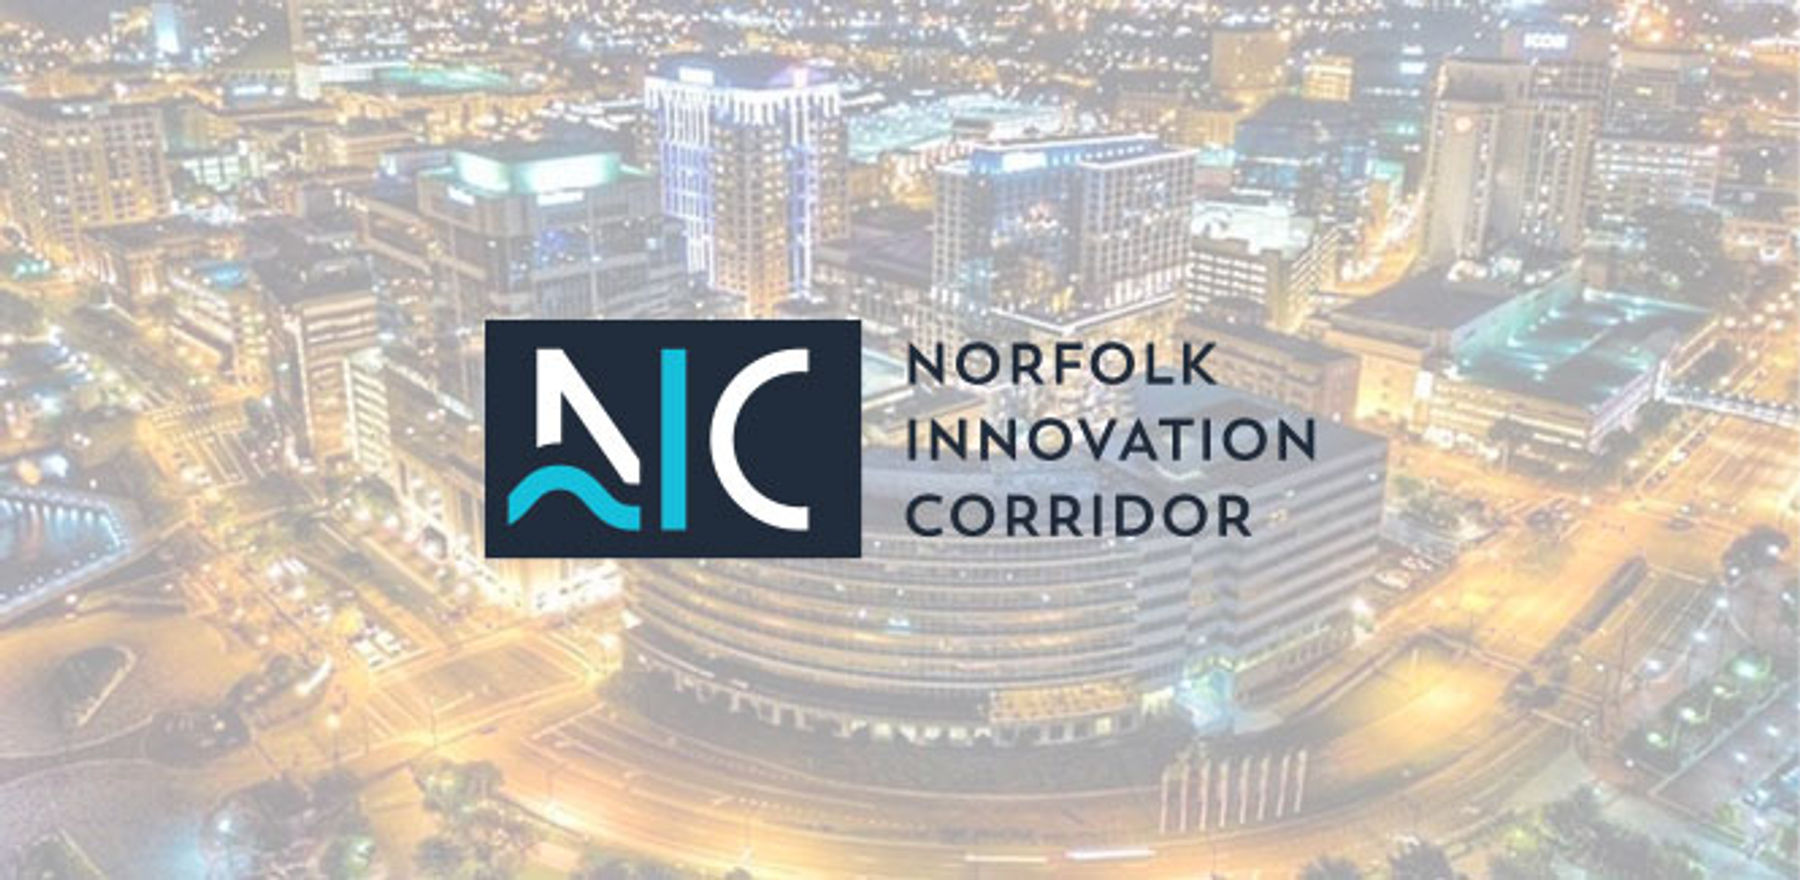 Norfolk Innovation Corridor